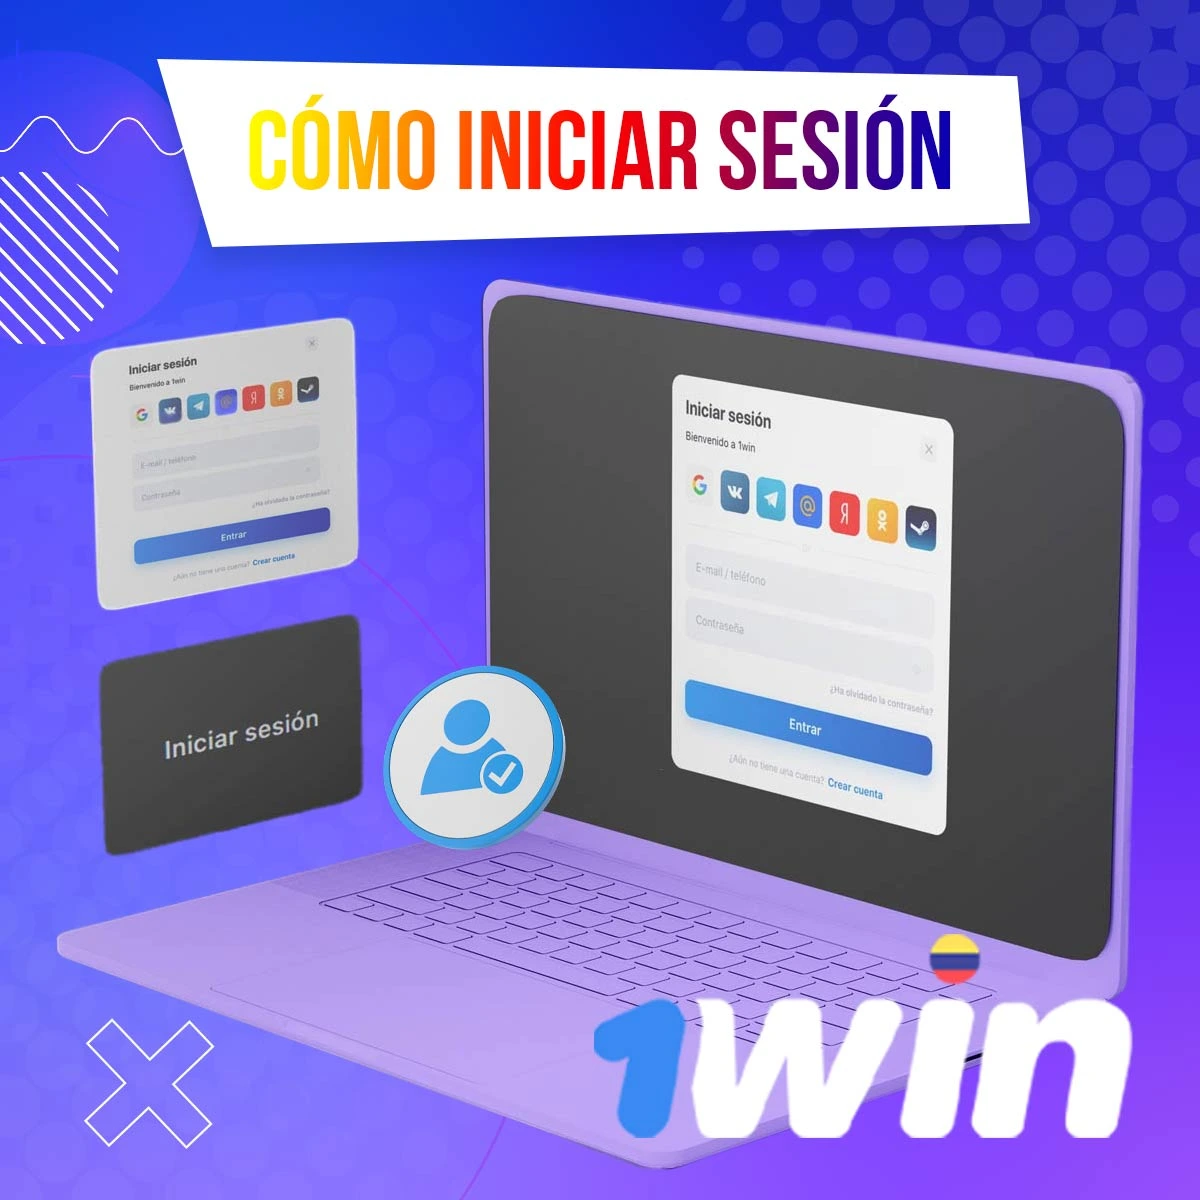 Guía paso a paso sobre cómo iniciar sesión en tu cuenta de 1win Colombia después de registrarte